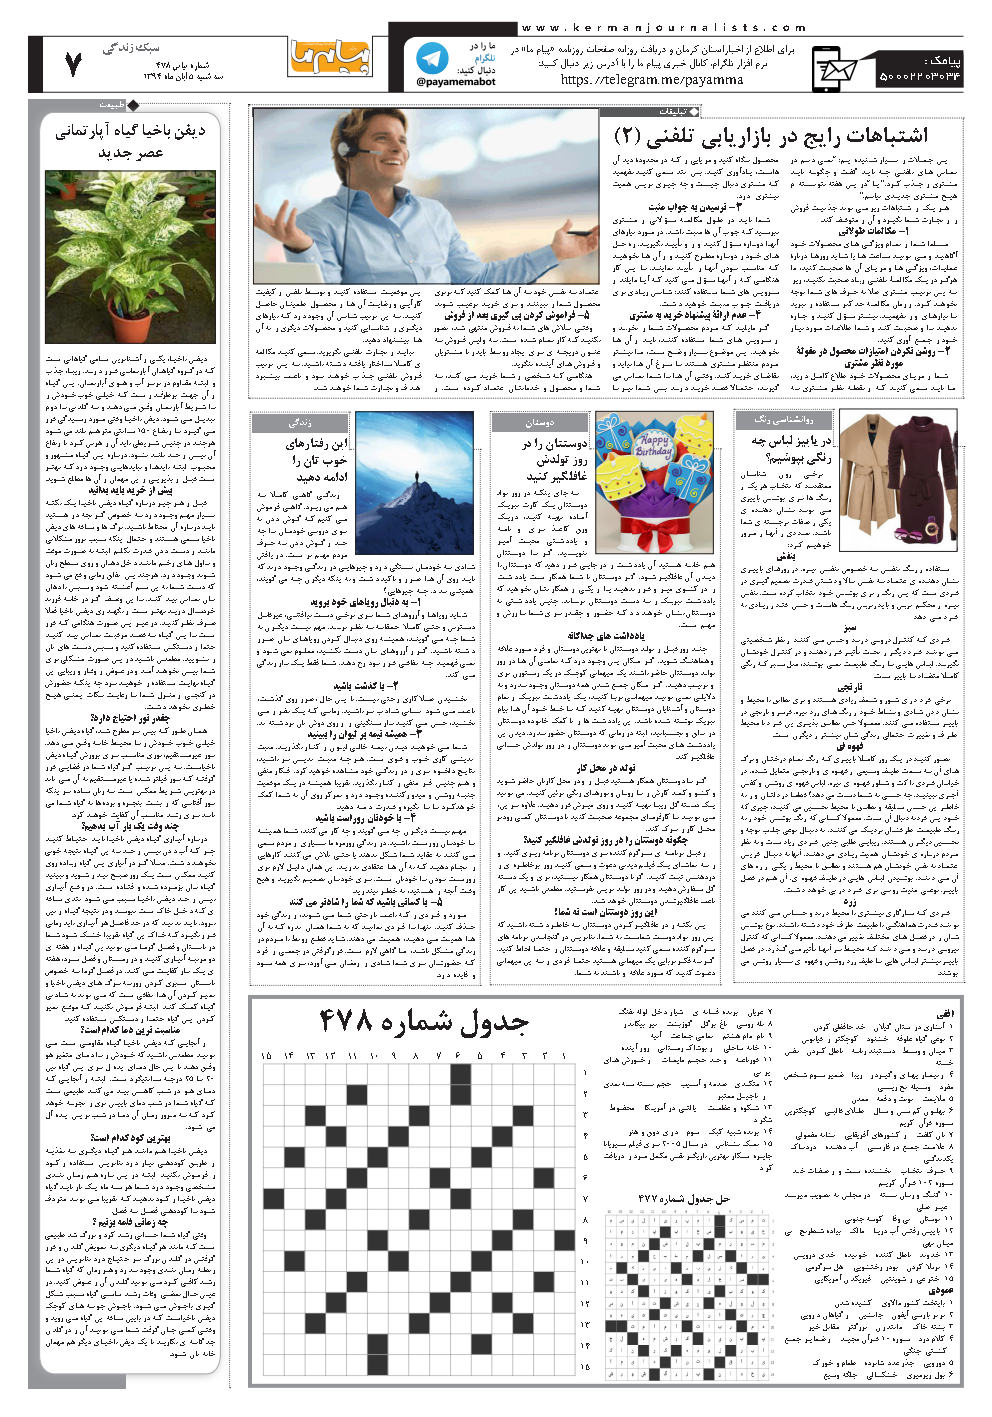 صفحه سبک زندگی شماره شماره ۴۷۸ روزنامه پیام ما